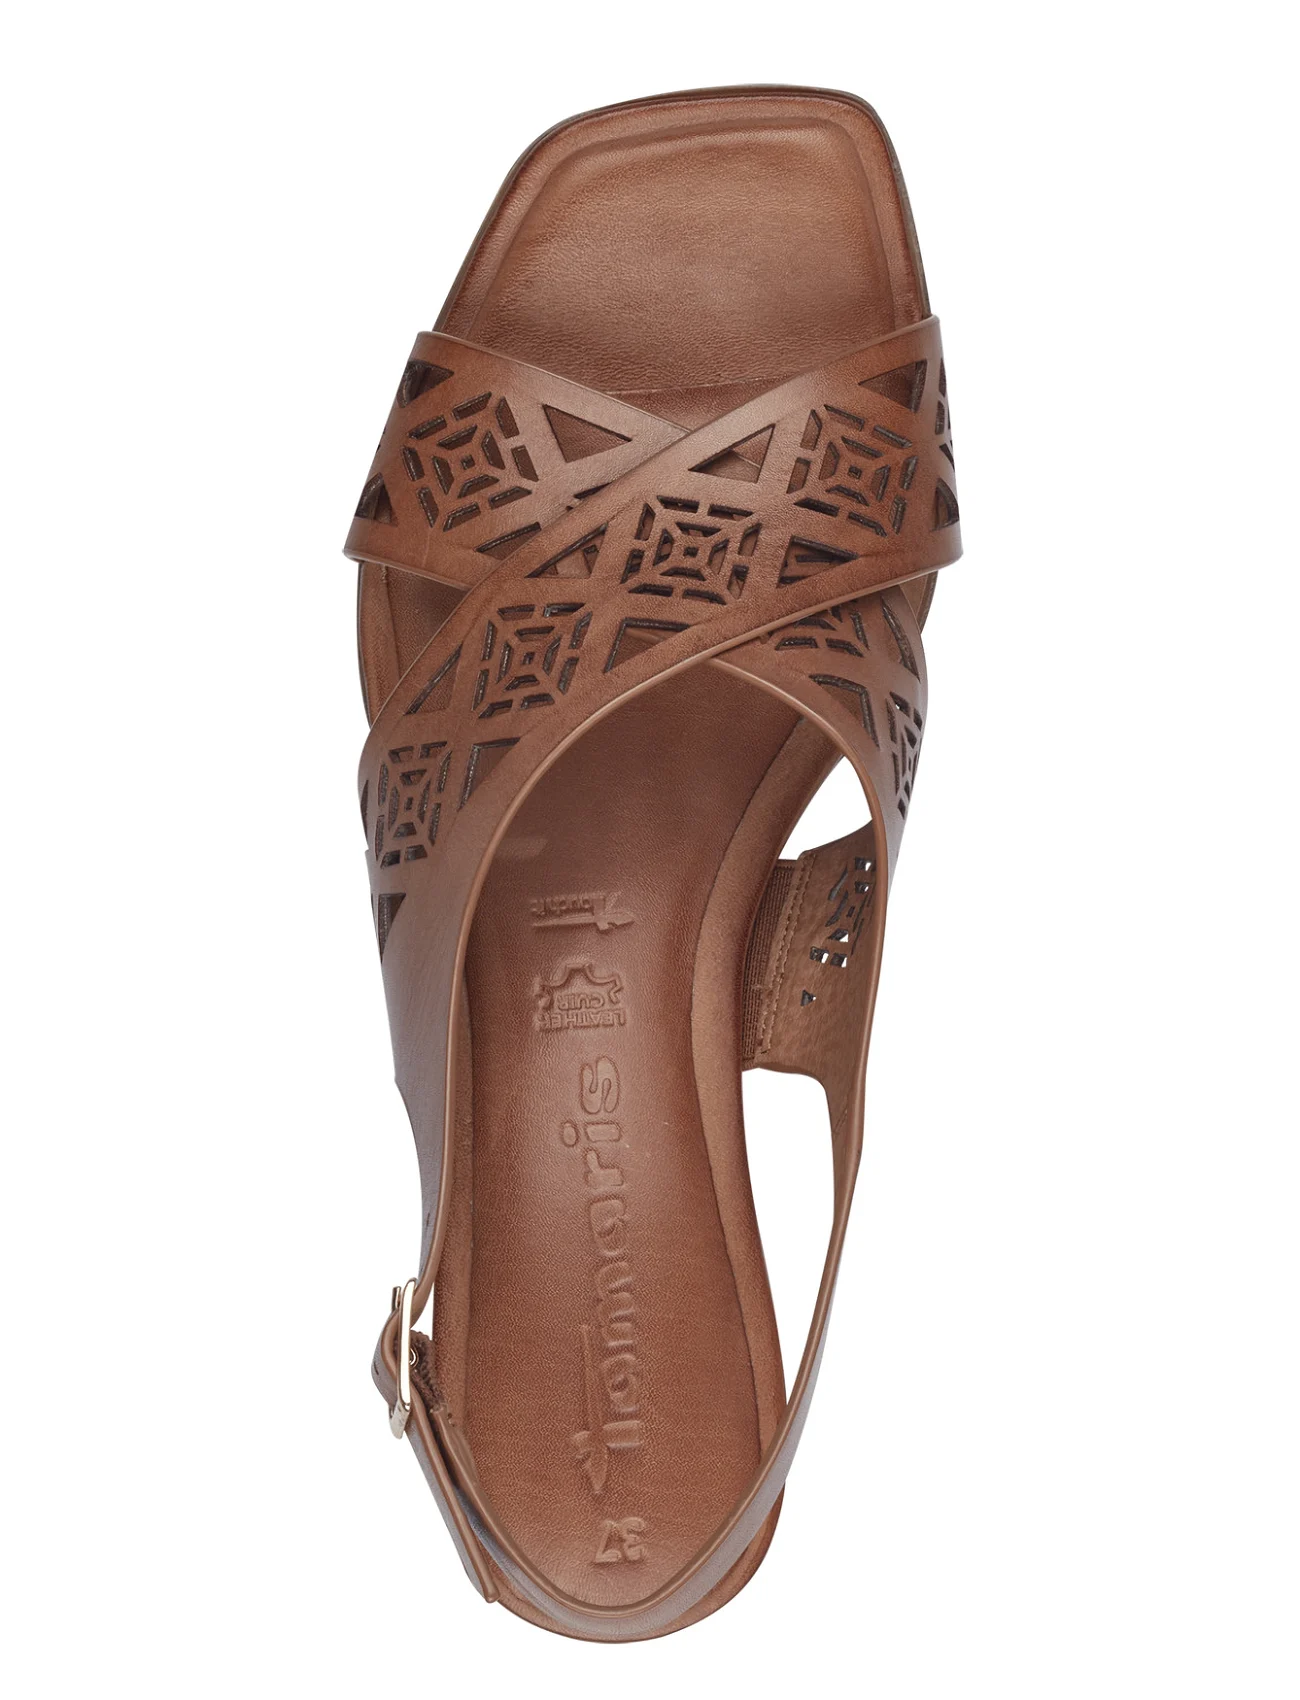 Tamaris - Women Sandals - sandaler med hæl - nut - 1